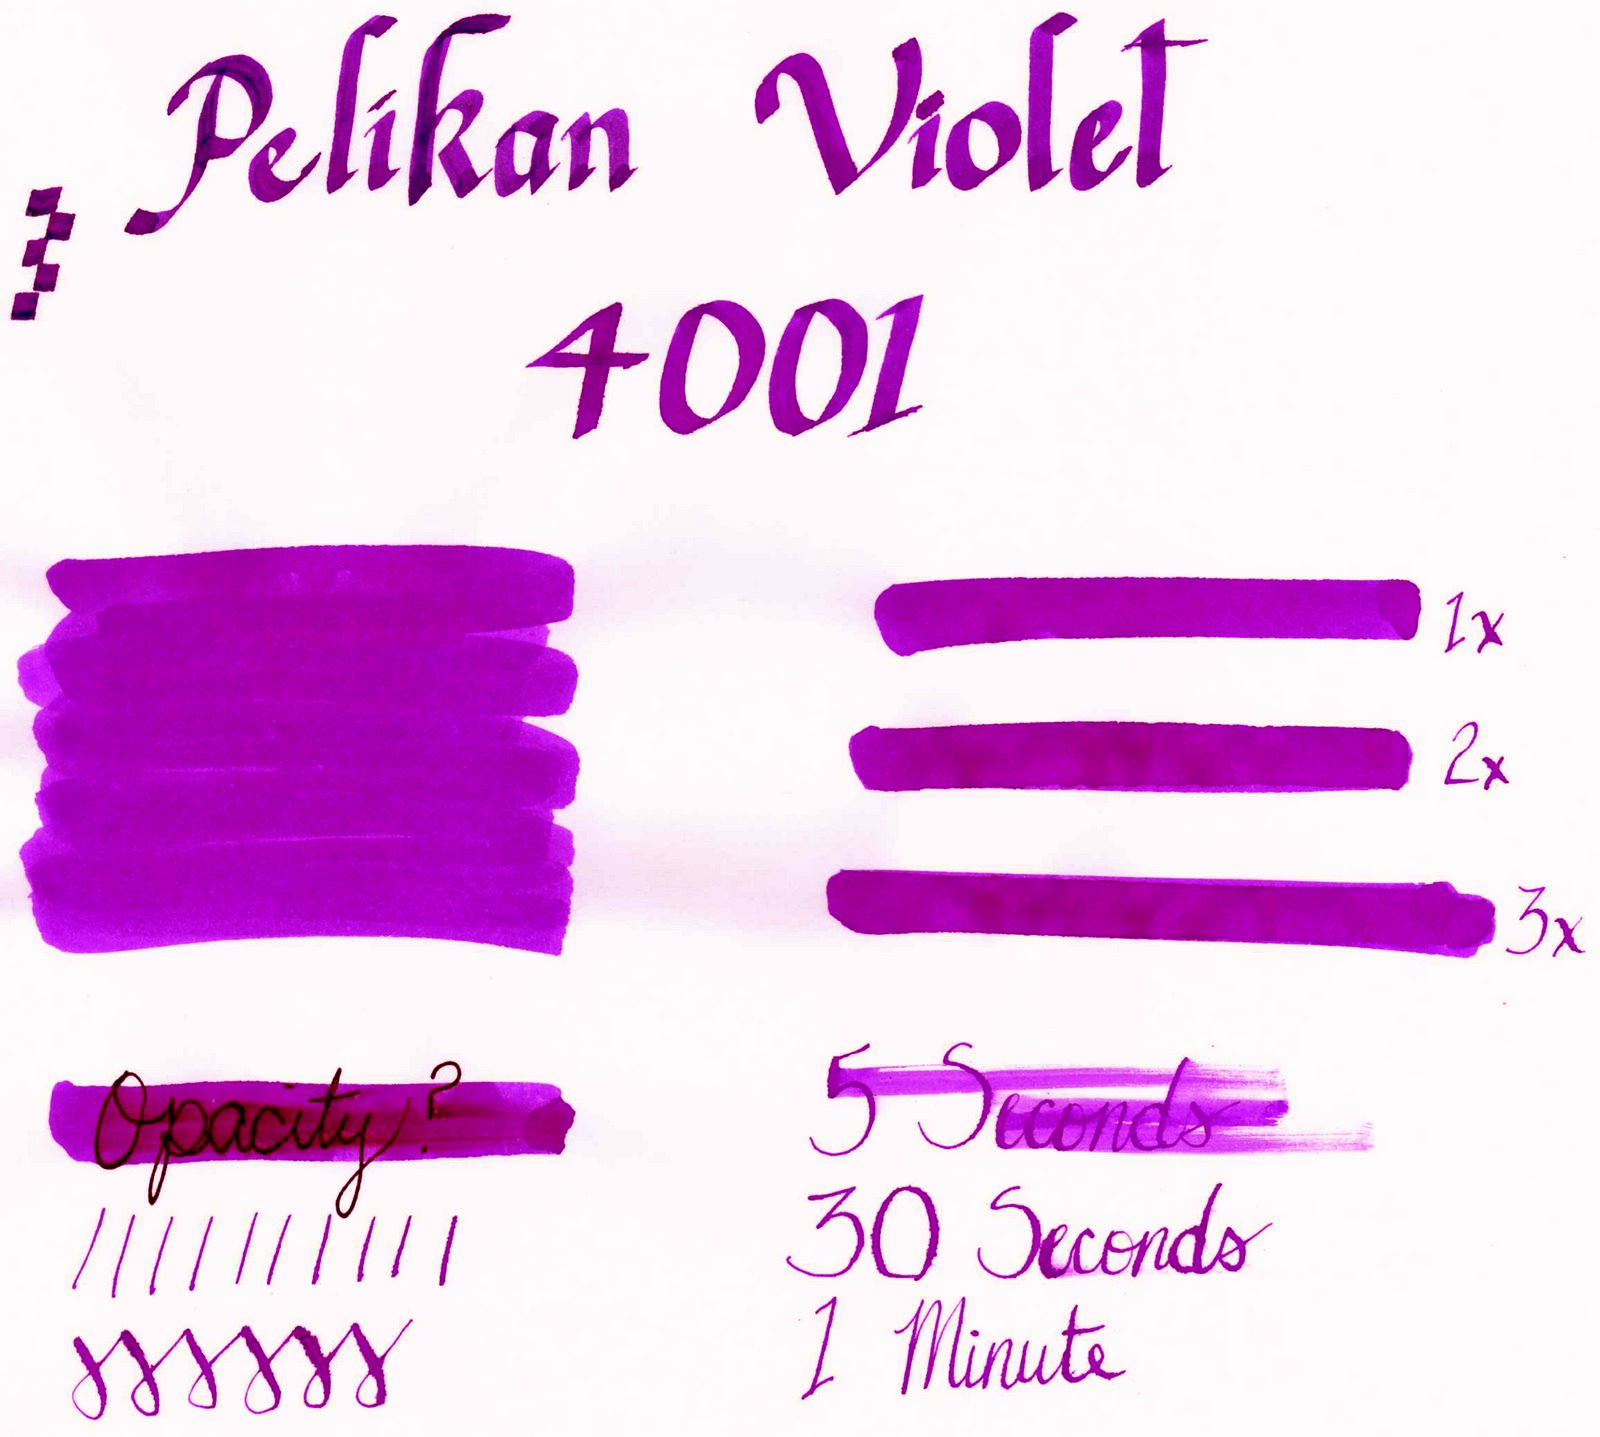 Pelikan Violet.jpg